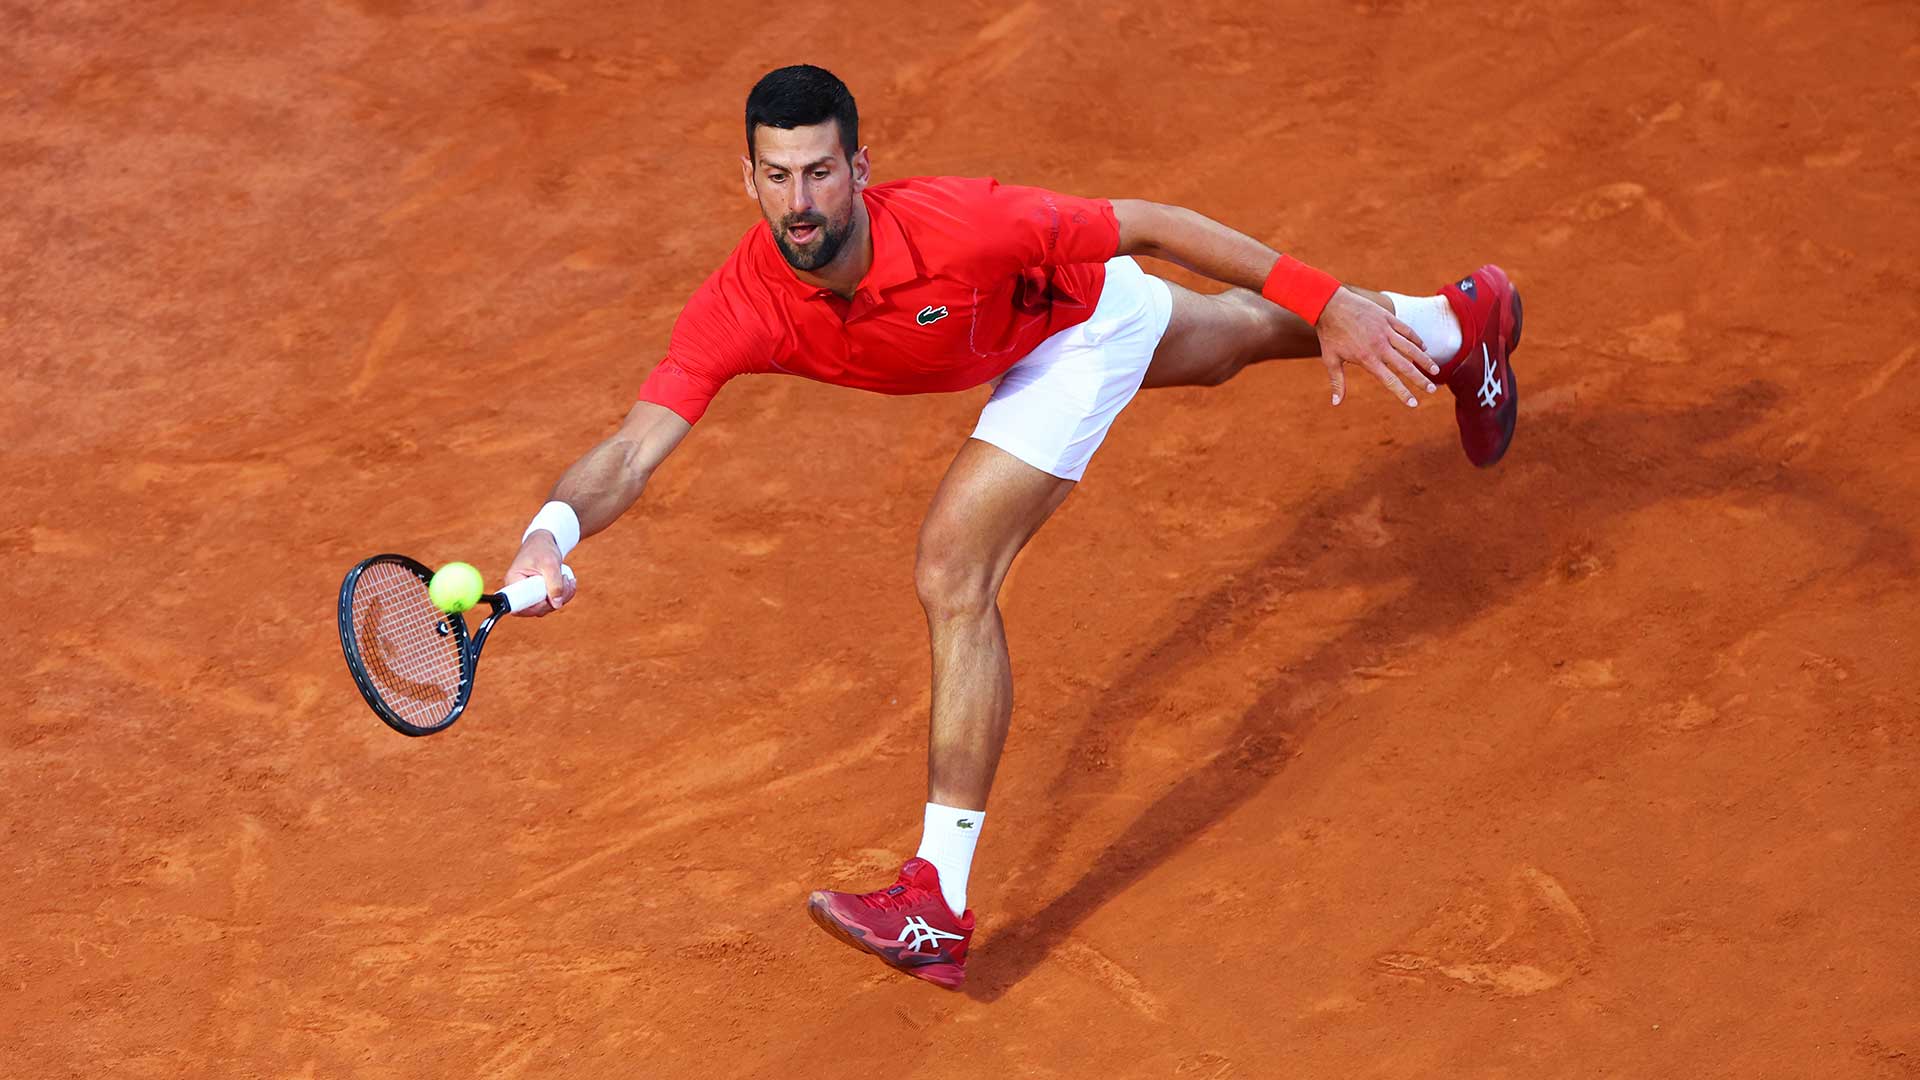 Djokovic makes fast start in Rome